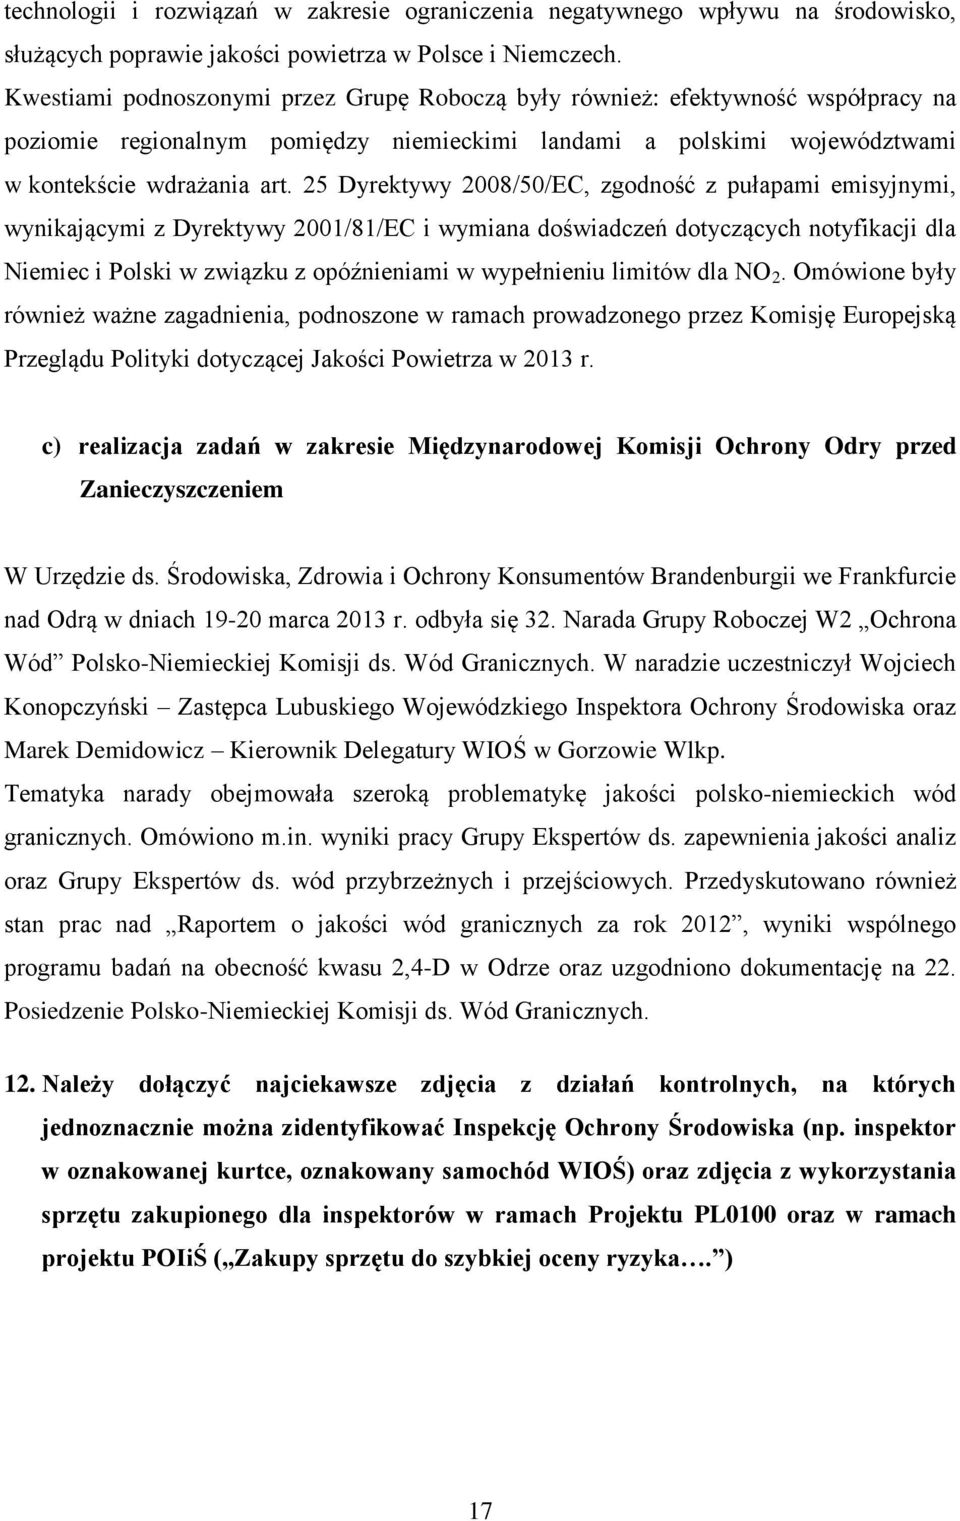 25 Dyrektywy 2008/50/EC, zgodność z pułapami emisyjnymi, wynikającymi z Dyrektywy 2001/81/EC i wymiana doświadczeń dotyczących notyfikacji dla Niemiec i Polski w związku z opóźnieniami w wypełnieniu